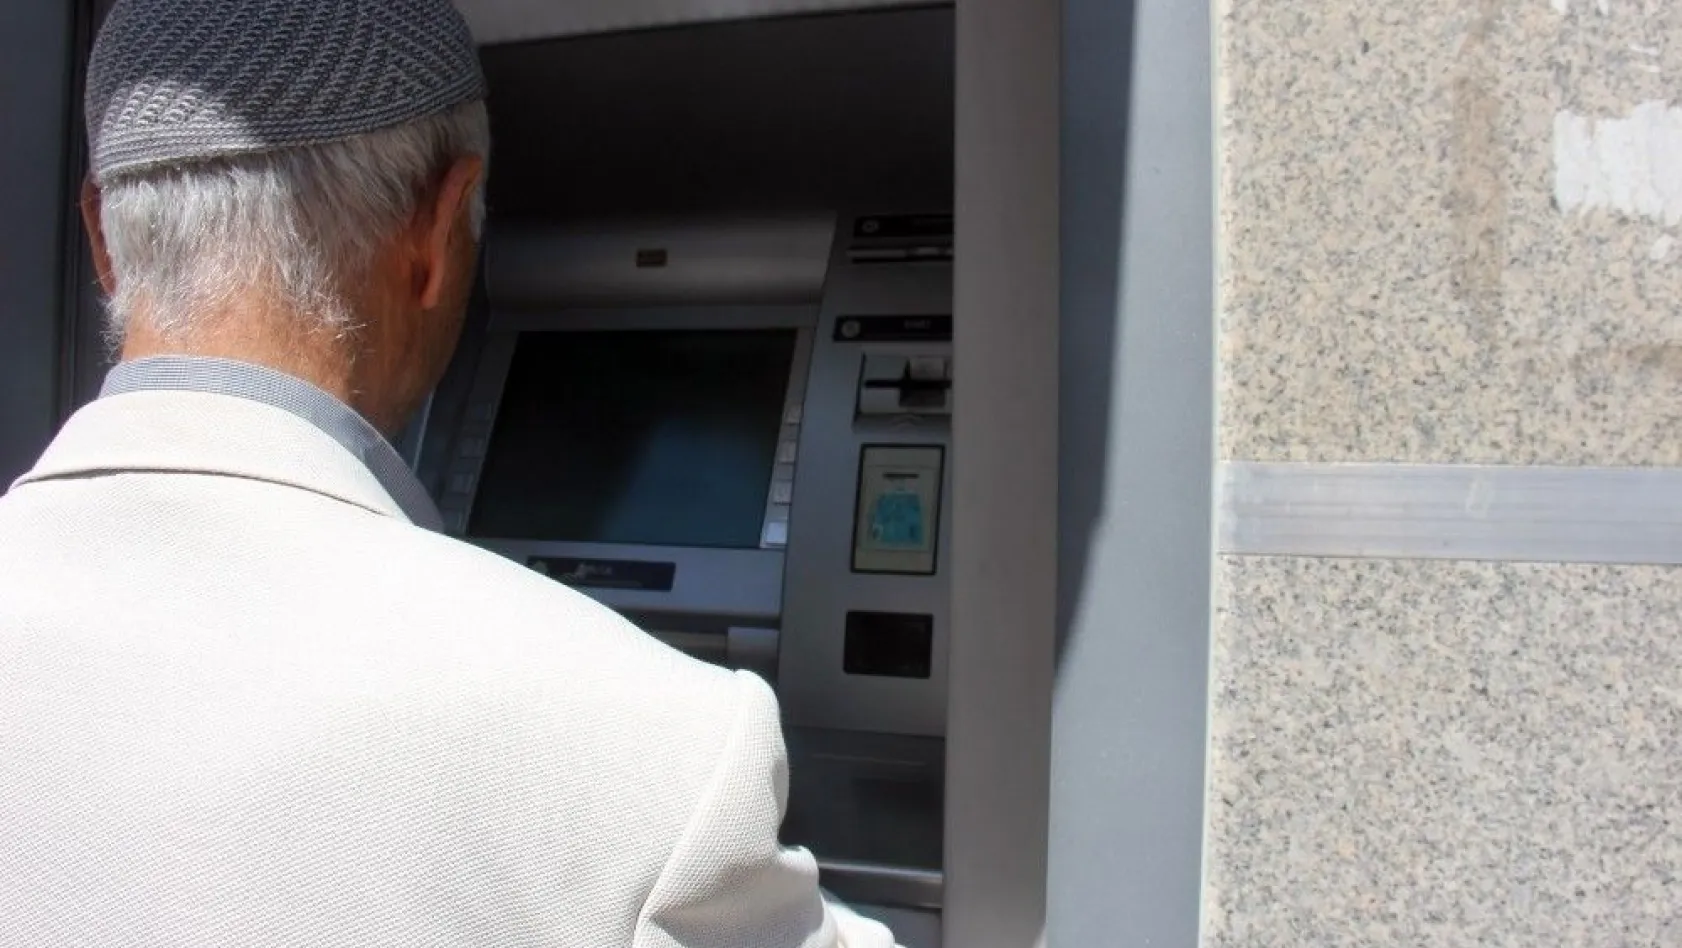 ATM'de unuttuğu emekli maaşını kaptırdı
